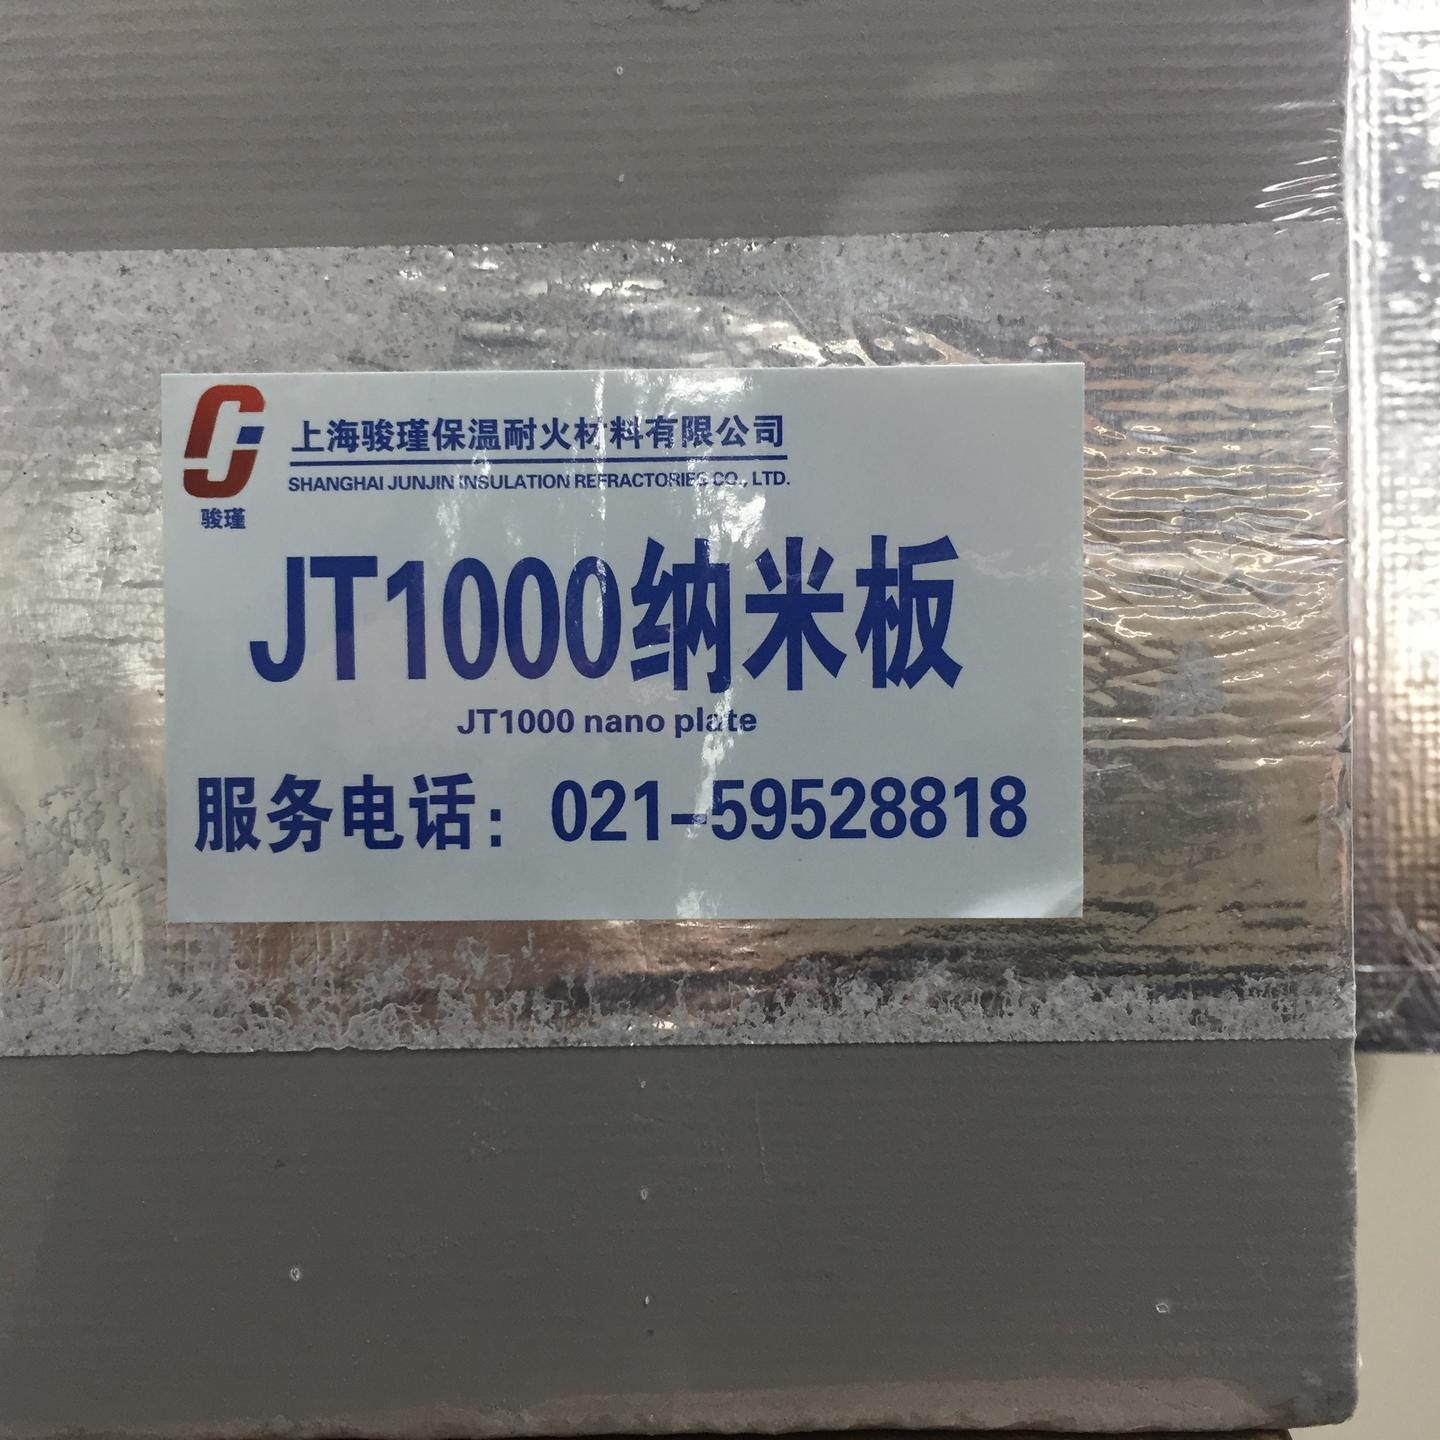 上海骏瑾 厂家直销电气行业窑炉行业高性能纳米材料 火电行业用